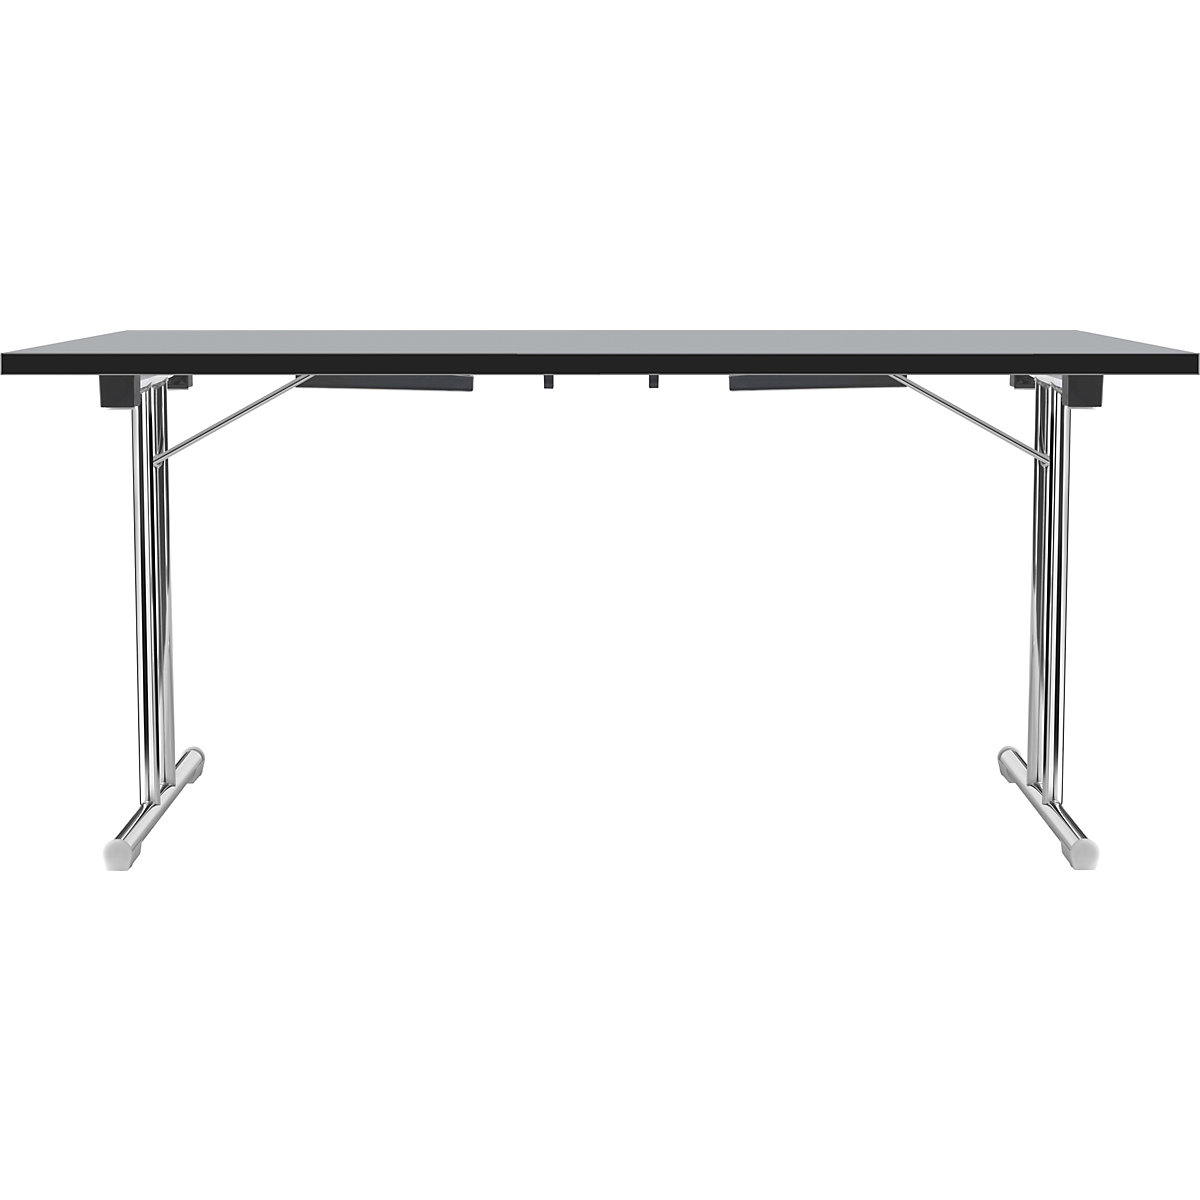 Inklapbare tafel met dubbel T-vormig onderstel, frame van staalbuis, verchroomd, lichtgrijs/zwart, b x d = 1400 x 700 mm-2